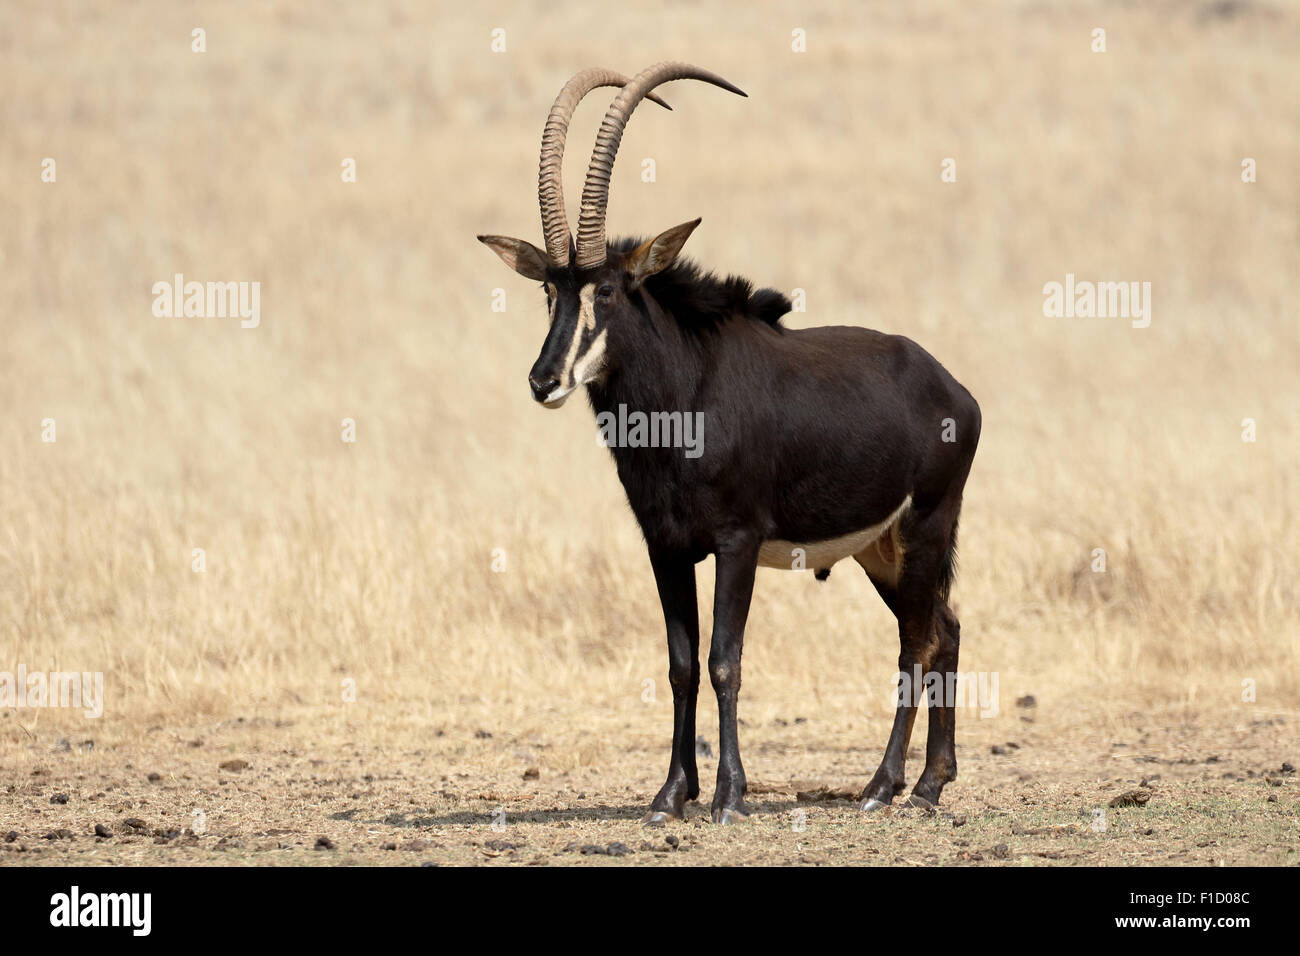 Sable, Hippotragus niger, seul mammifère, Afrique du Sud, août 2015 Banque D'Images